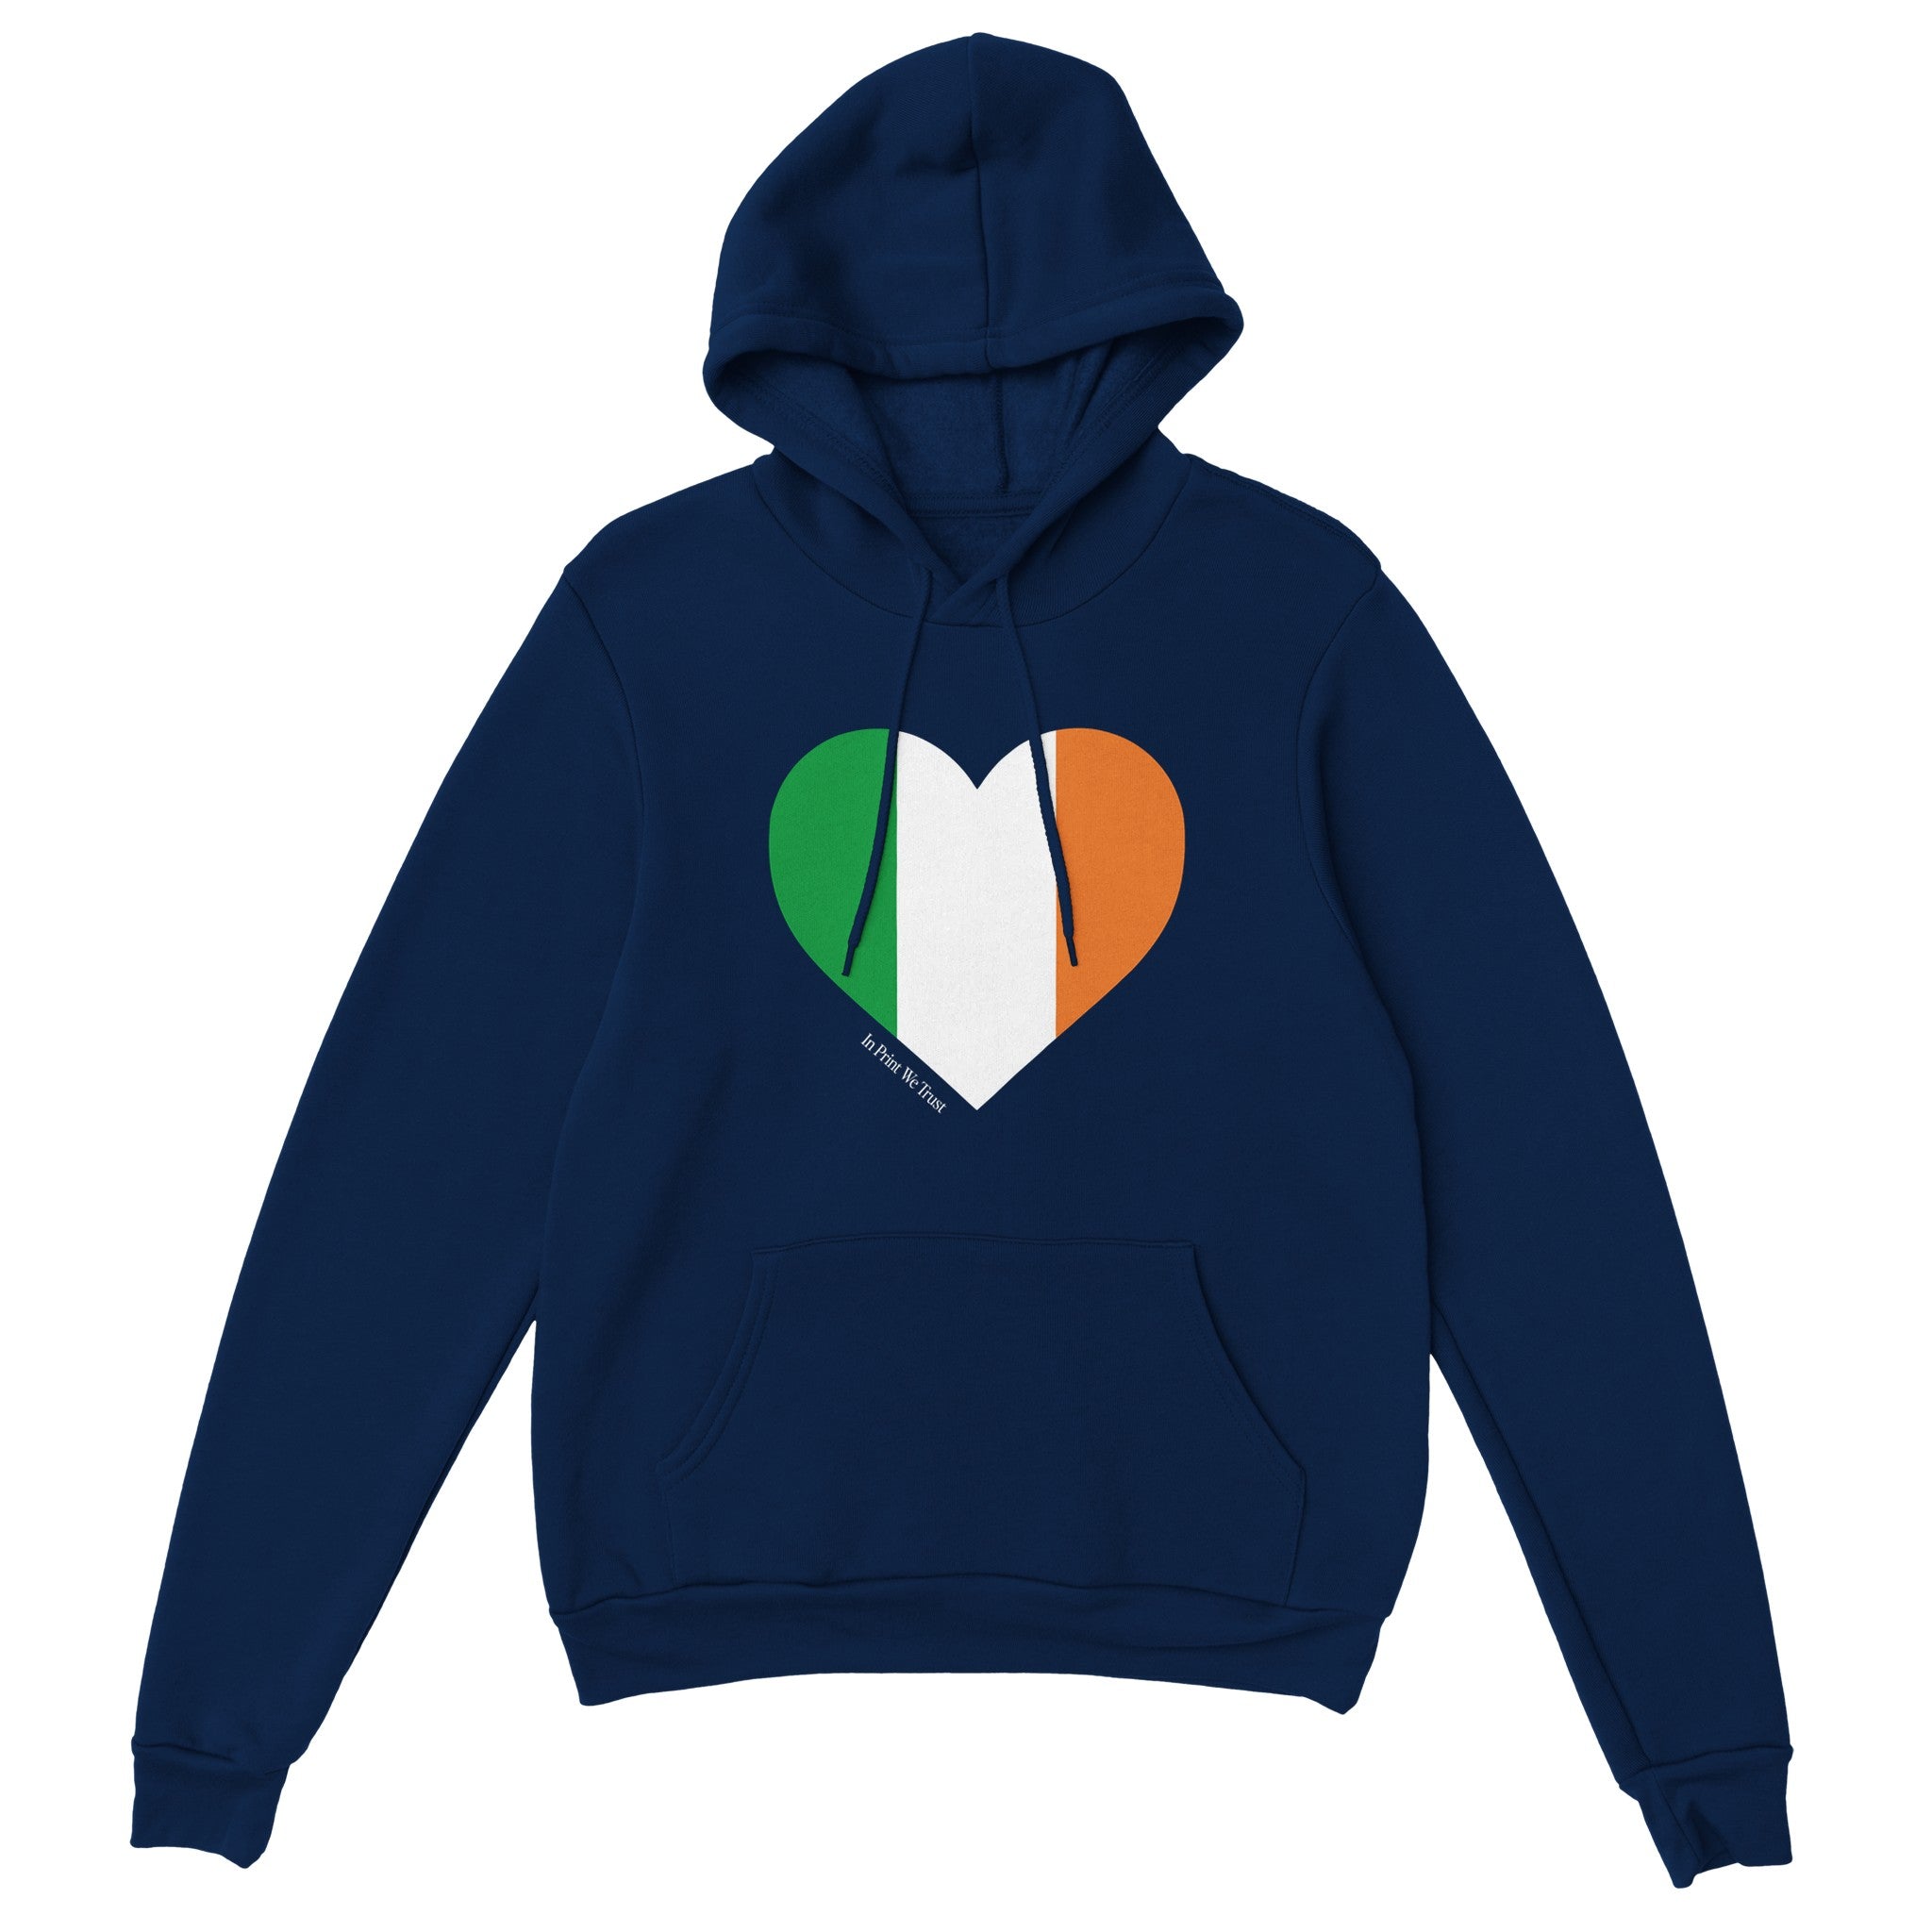 'Ireland' hoodie - In Print We Trust